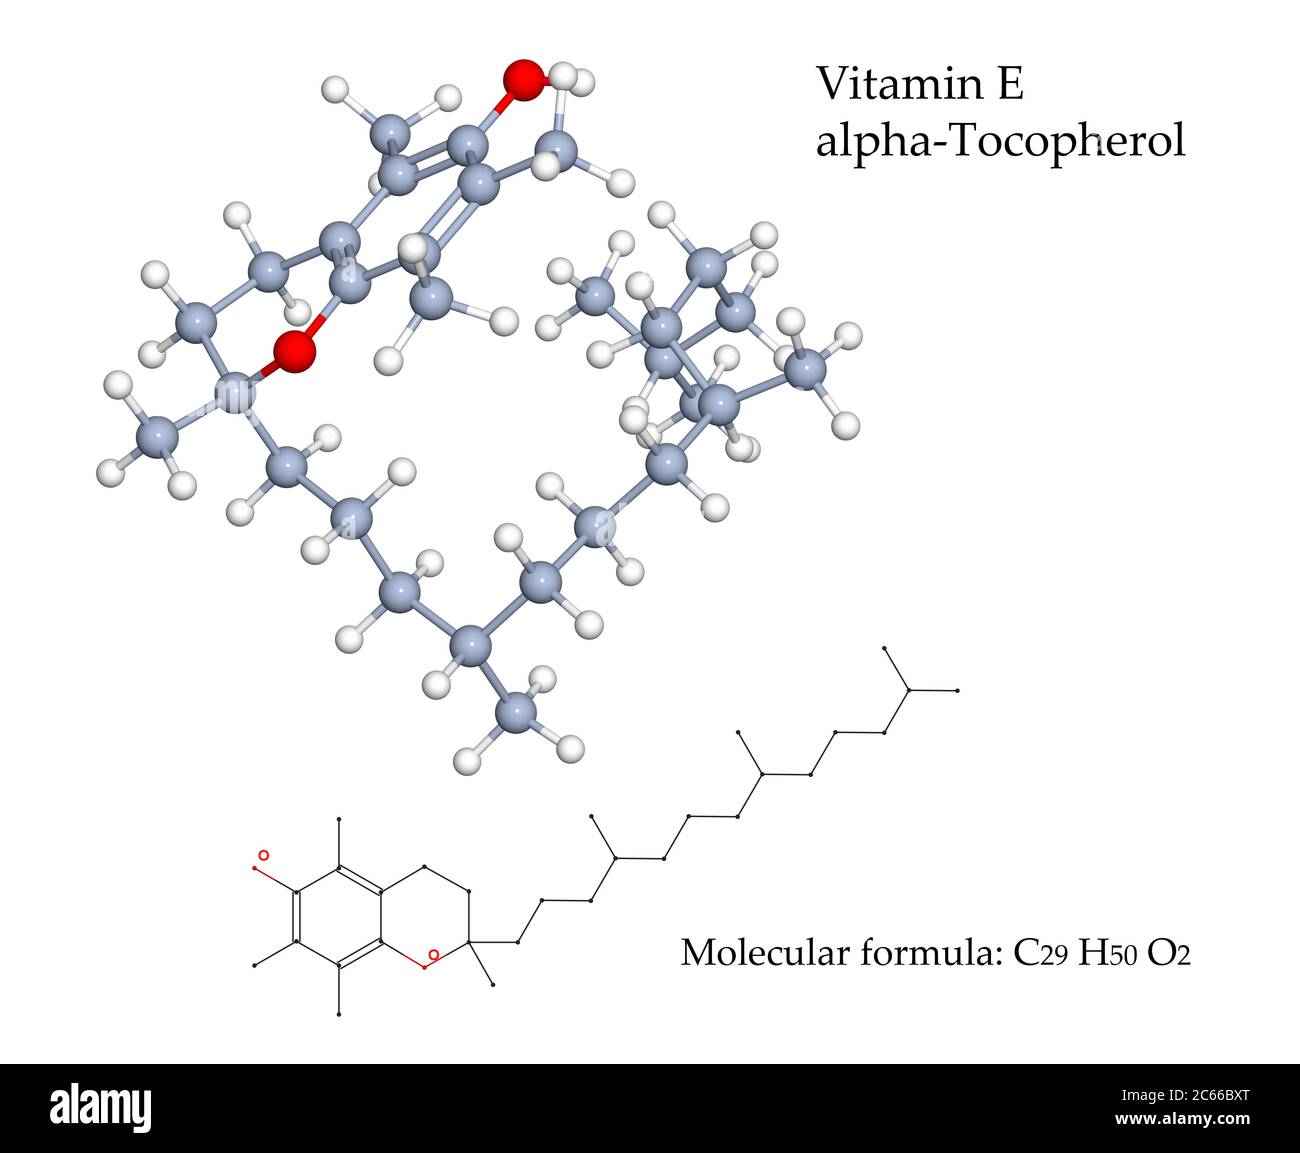 Vitamin E Alpha-Tocopherol-Molekül. Nahrungsquellen dieses Antioxidans sind pflanzliche Öle, Nüsse, Samen und angereichertes Frühstückscerealien. 3d-Illustration Stockfoto